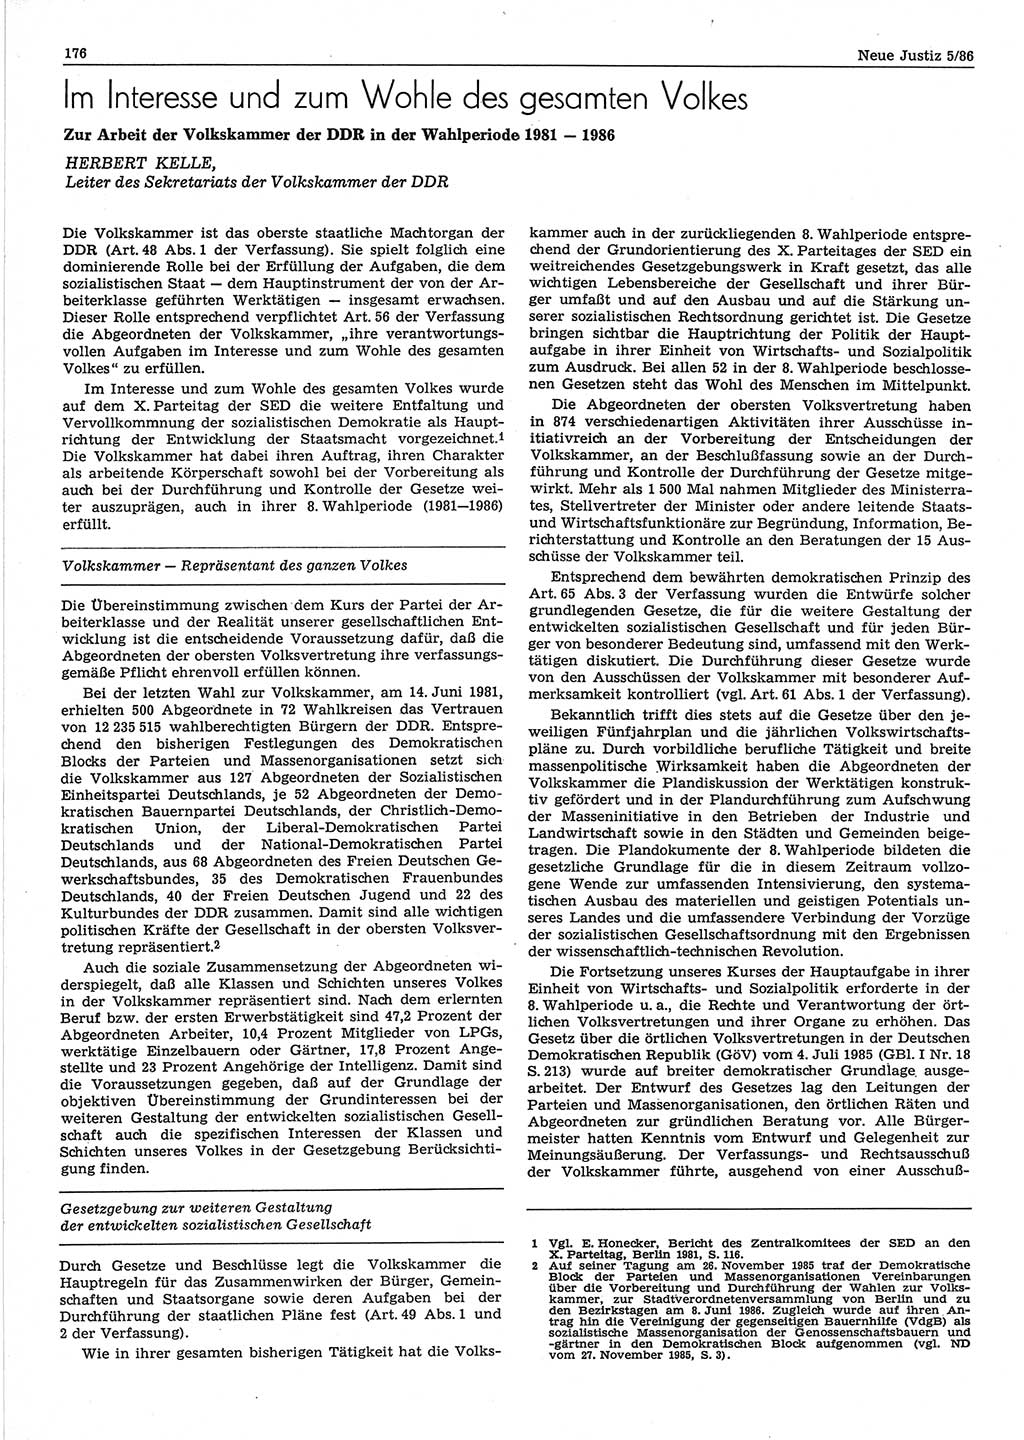 Neue Justiz (NJ), Zeitschrift für sozialistisches Recht und Gesetzlichkeit [Deutsche Demokratische Republik (DDR)], 40. Jahrgang 1986, Seite 176 (NJ DDR 1986, S. 176)